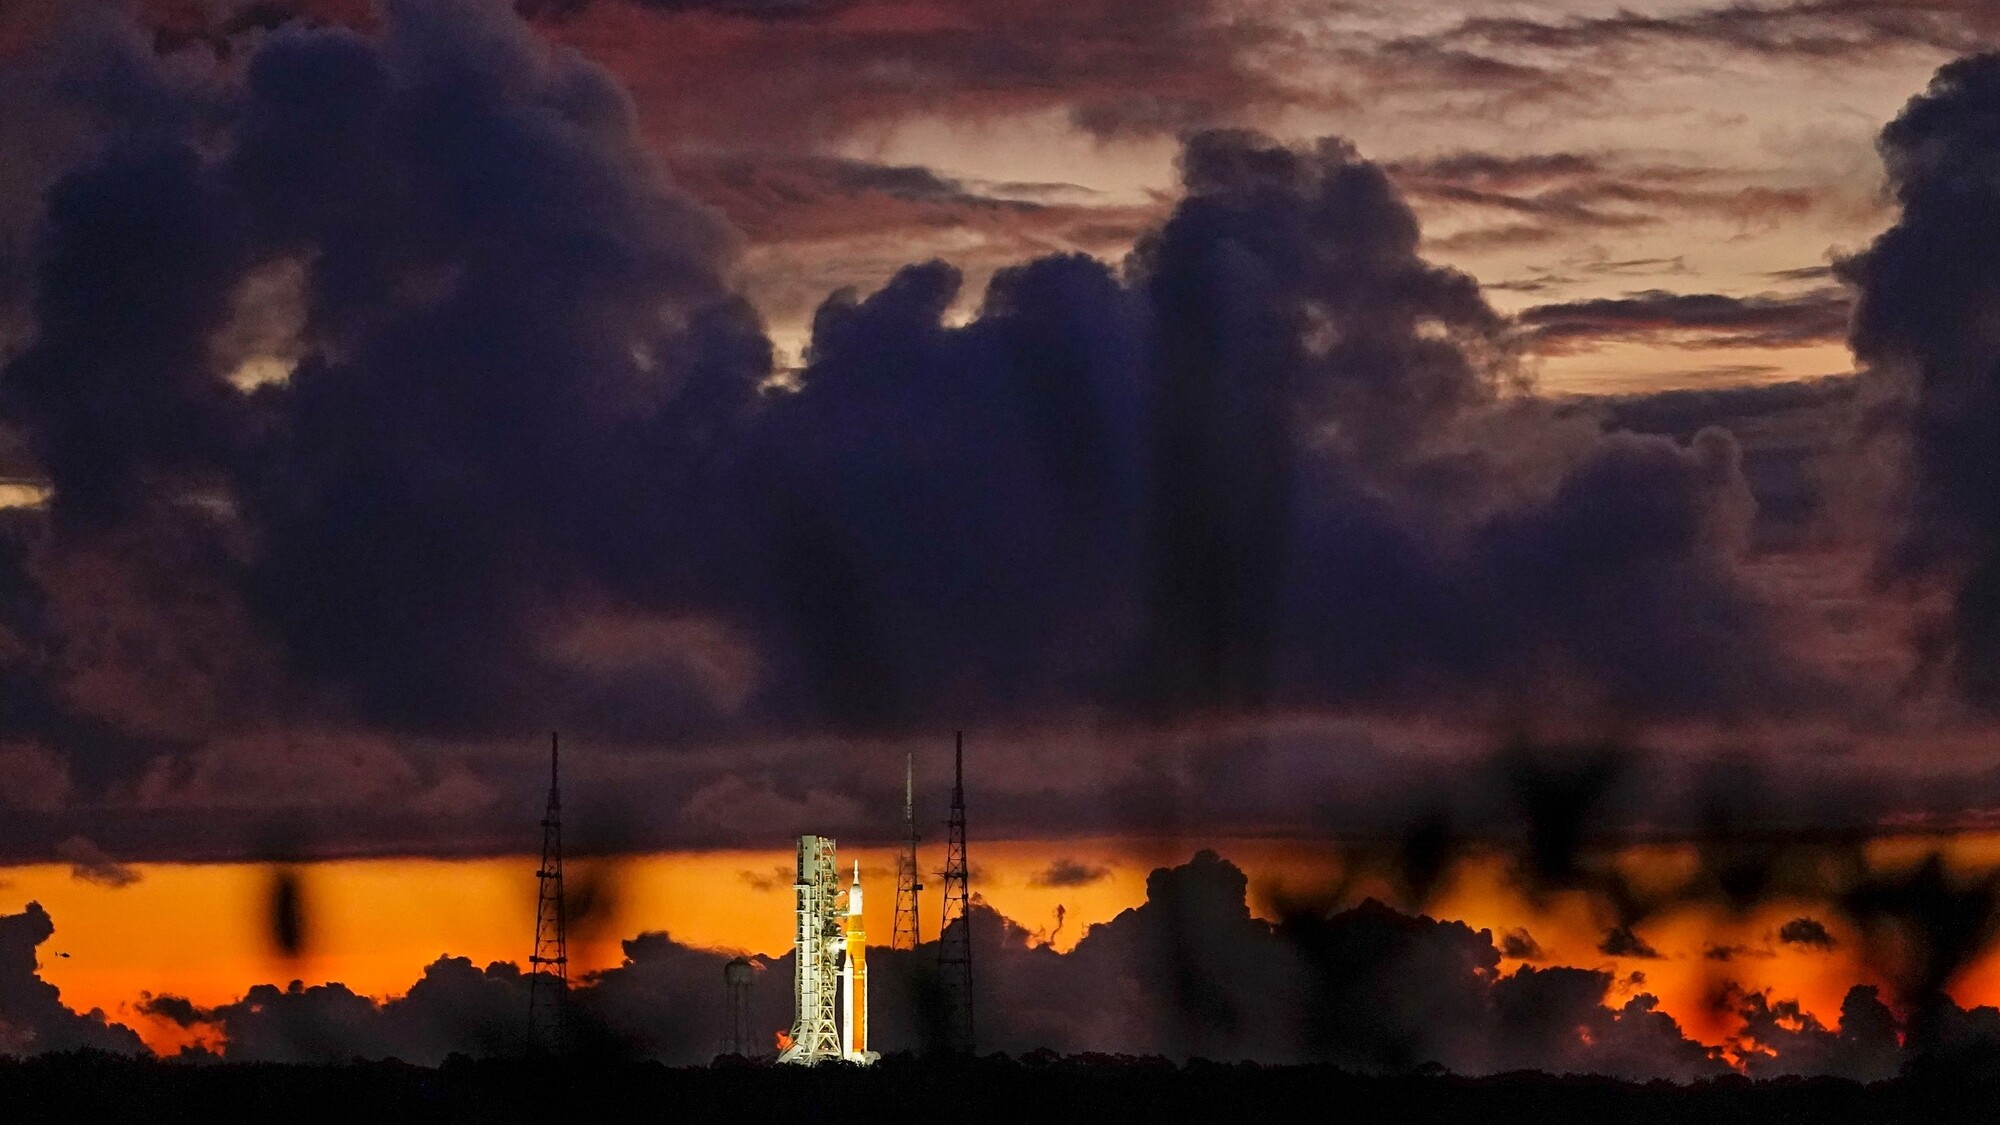 Nosná raketa Space Launch System (SLS) a modul Orion na štartovacej rampe 39 na Kennedyho vesmírnom stredisku na Floride. Štart rakety, ktorá má vyniesť do vesmíru loď Orion bez posádky NASA odvolala pre problémy s teplotou jedného z motorov. (29. august 2022)